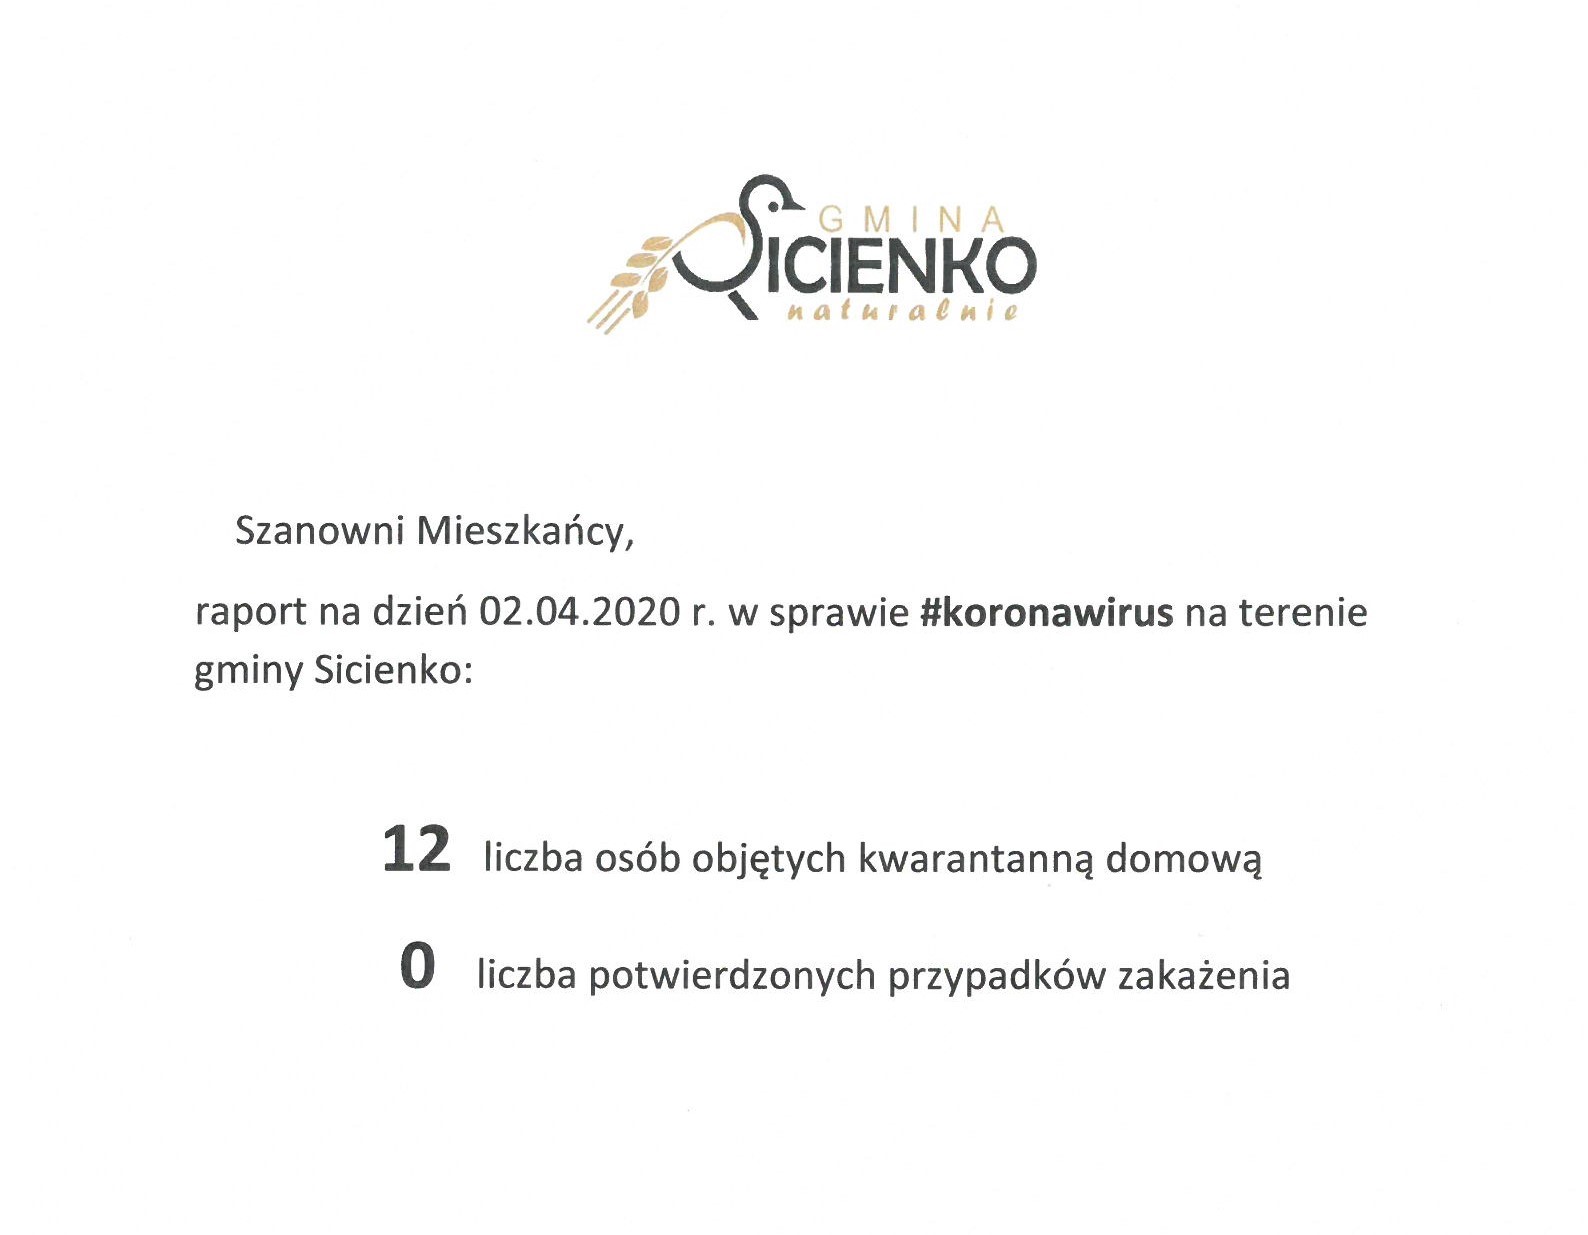 Raport dzienny w sprawie koronawirus na terenie gminy Sicienko 02.04.2020r.